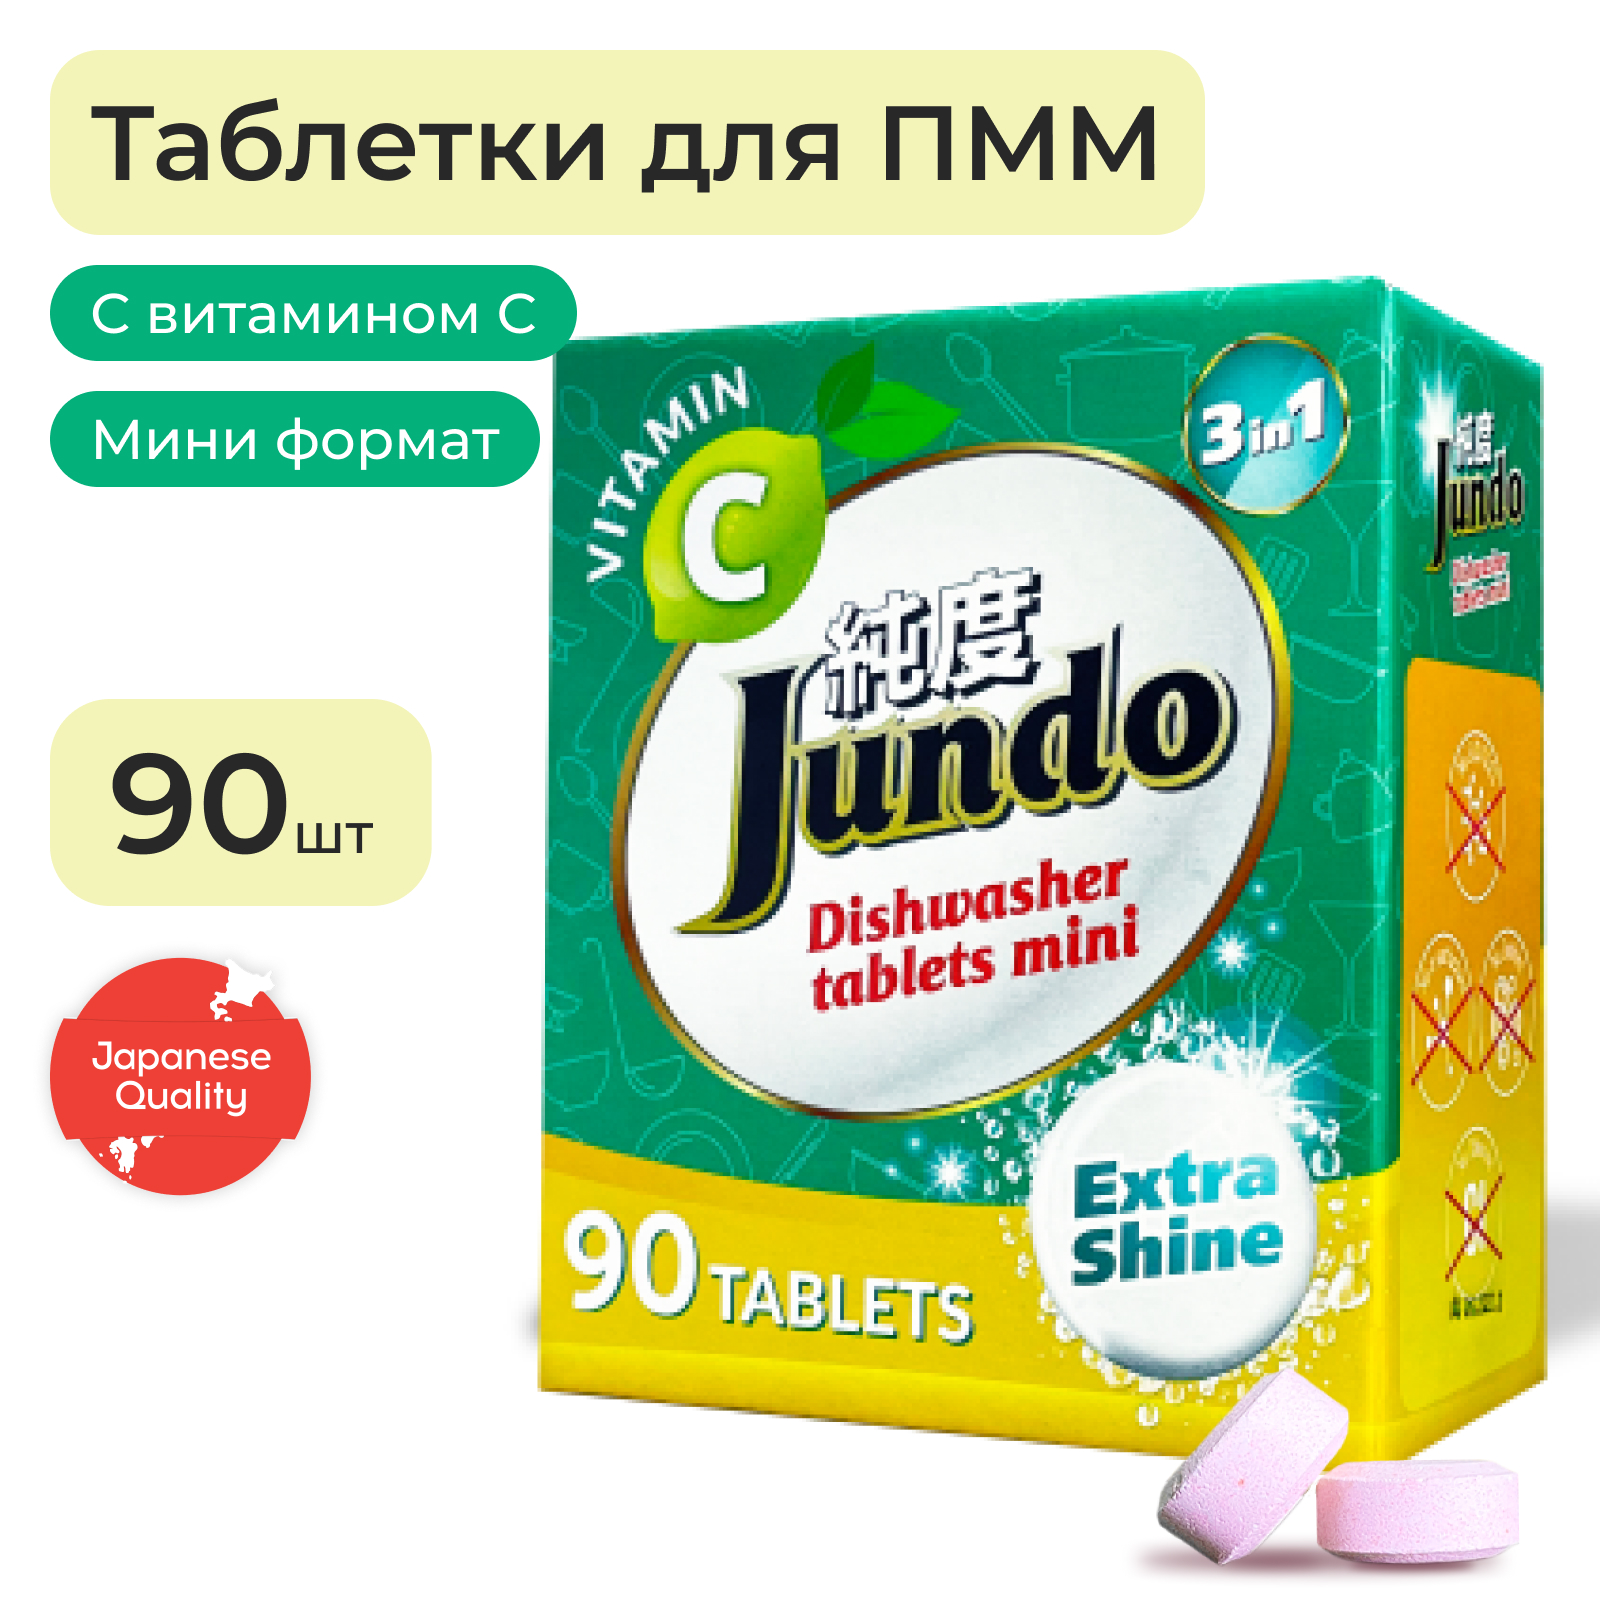 Таблетки для посудомоечной машины Jundo мини с Витамином С и активным кислородом 90 штук